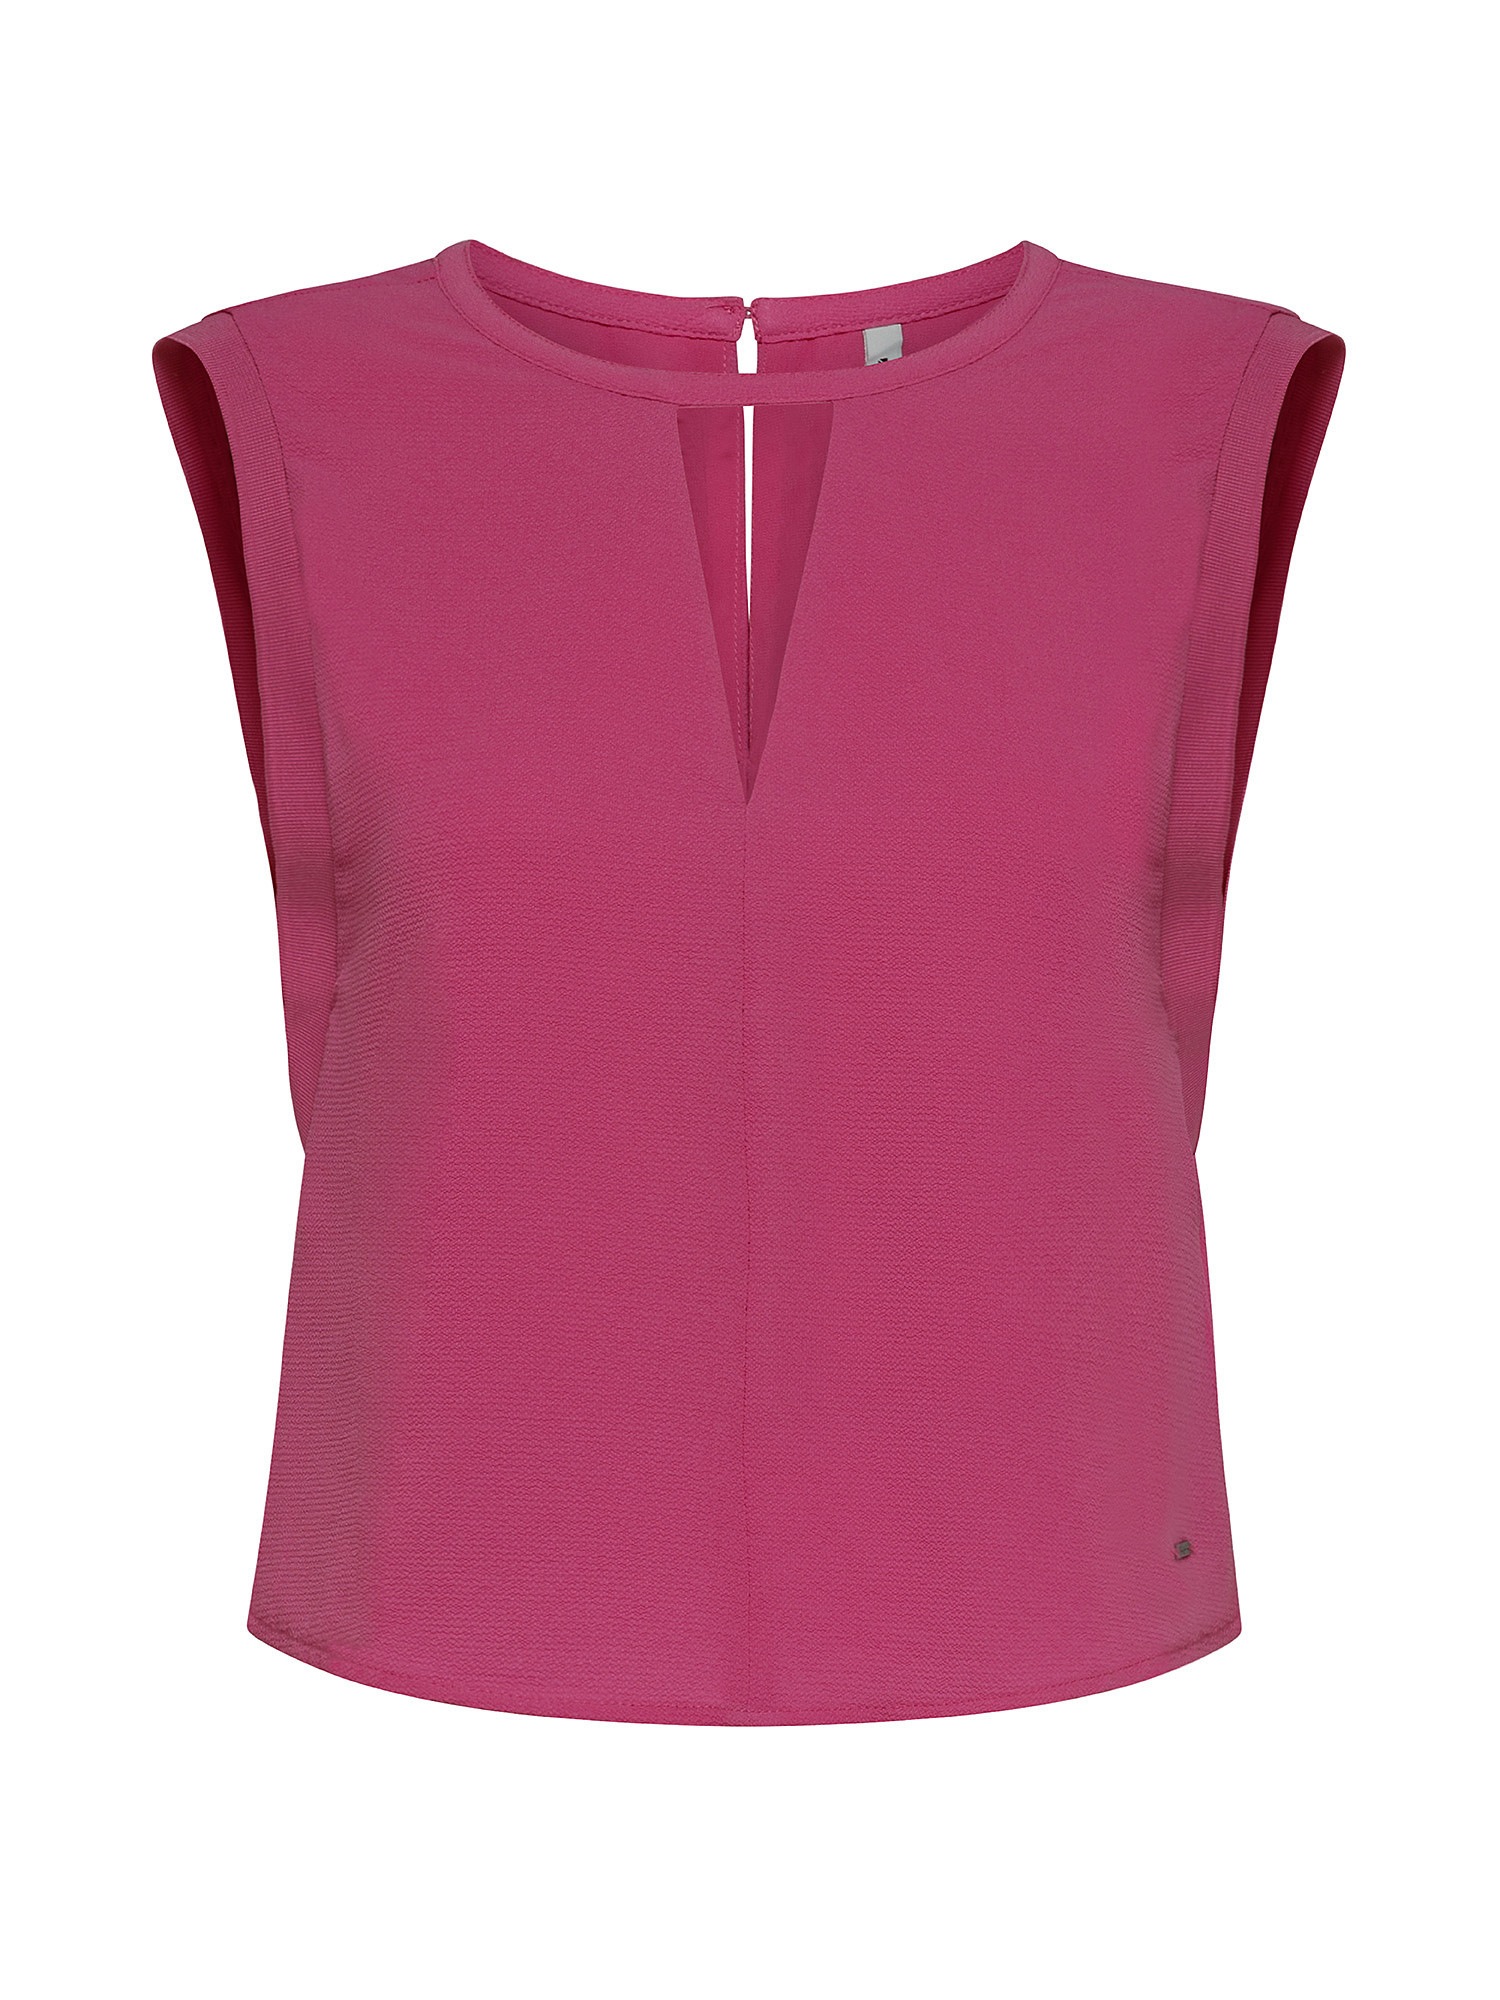 Estefany sleeveless top, Pink Flamingo, large image number 0